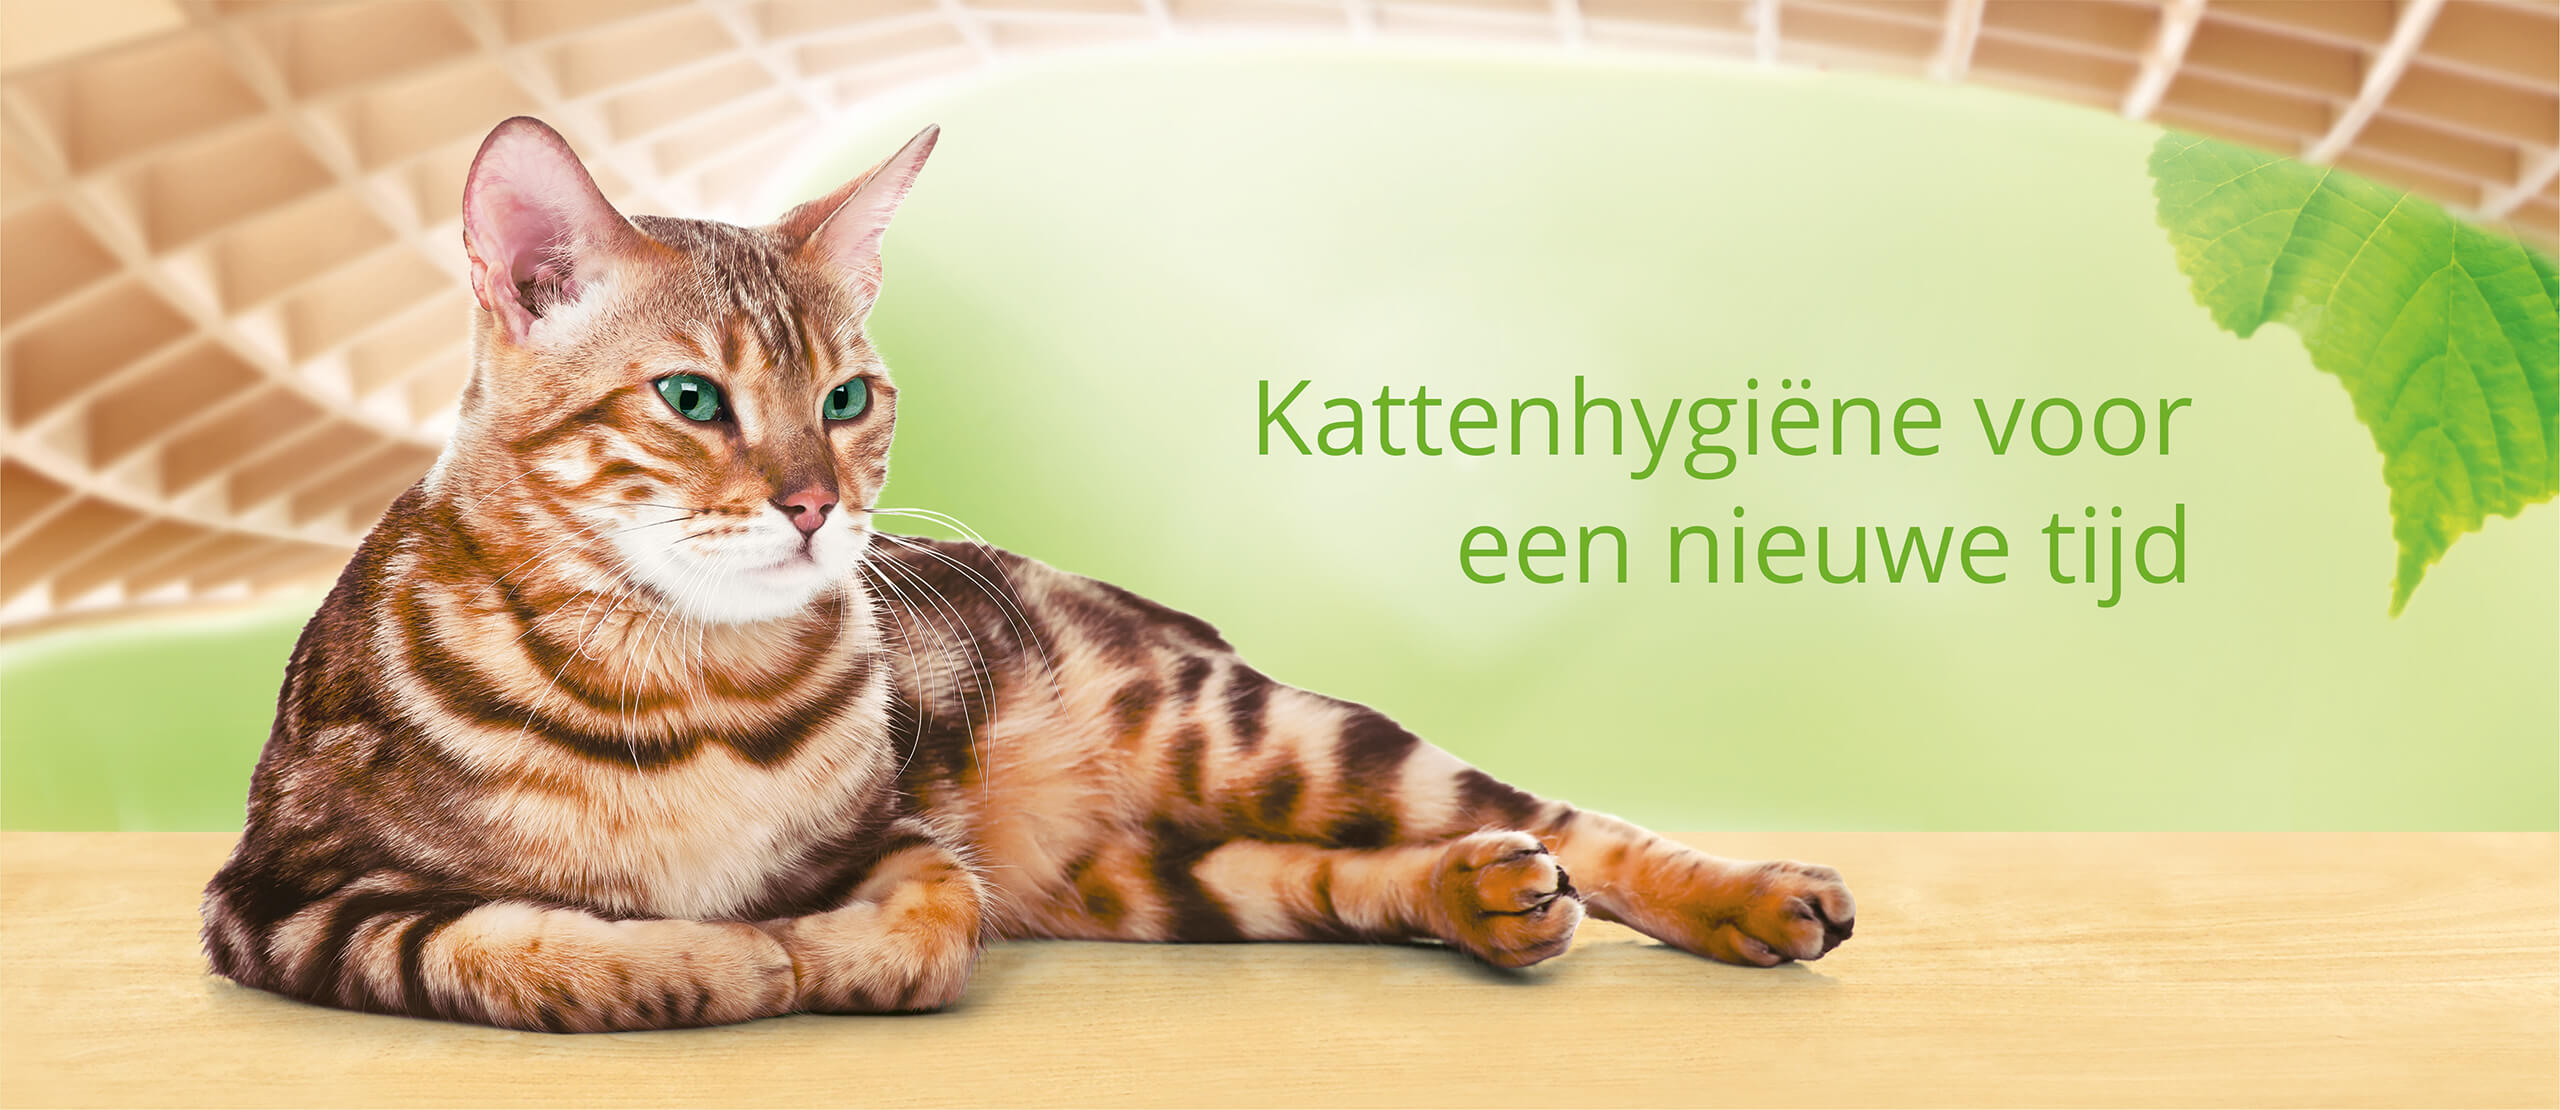 (c) Catsbest.nl